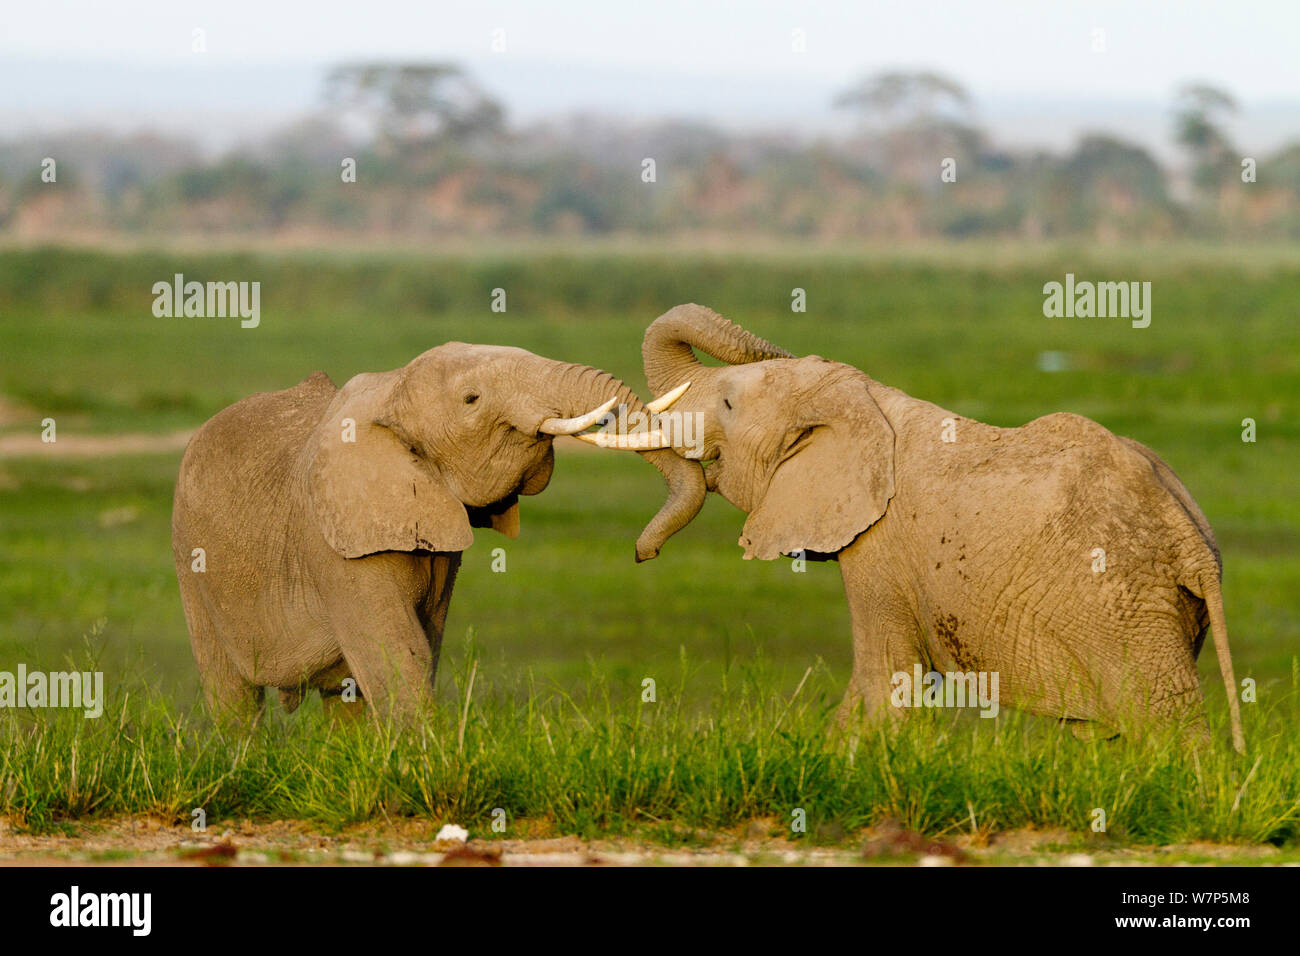 L'éléphant africain (Loxodonta africana) lutte contre les hommes. Le Parc national Amboseli, au Kenya. Banque D'Images